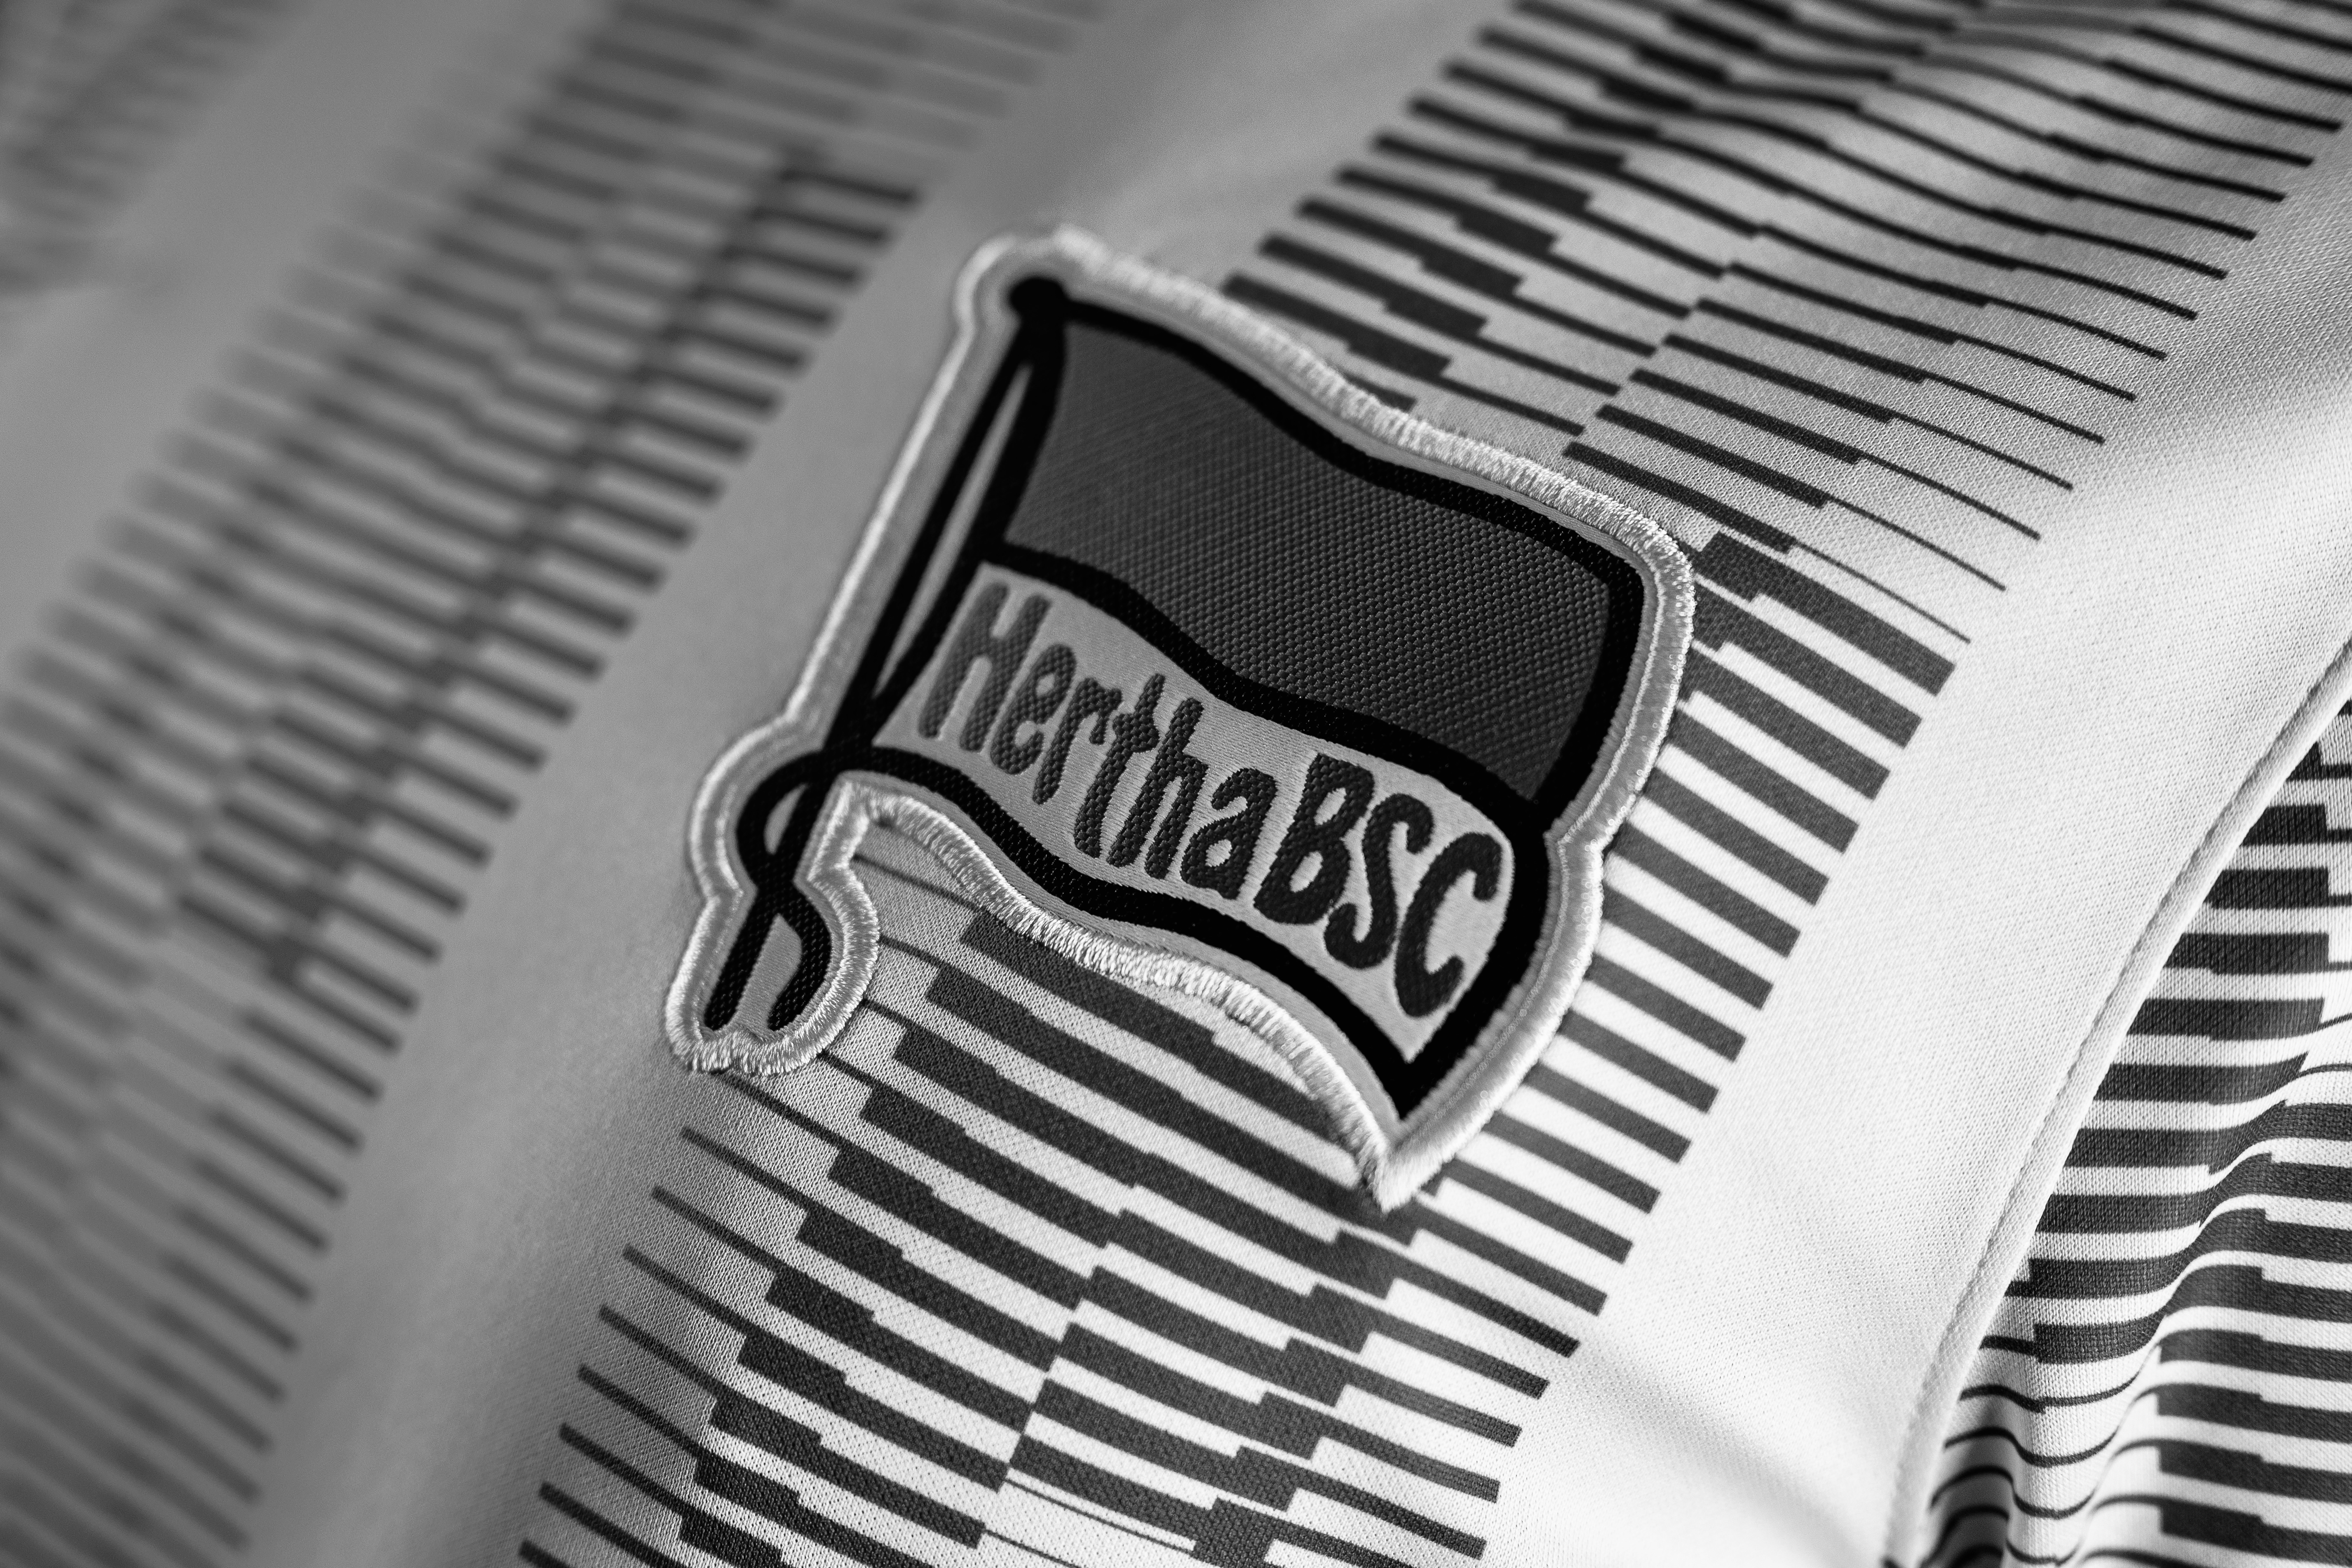 Unsere Hertha-Fahne auf dem Trikot in schwarz-weiß.